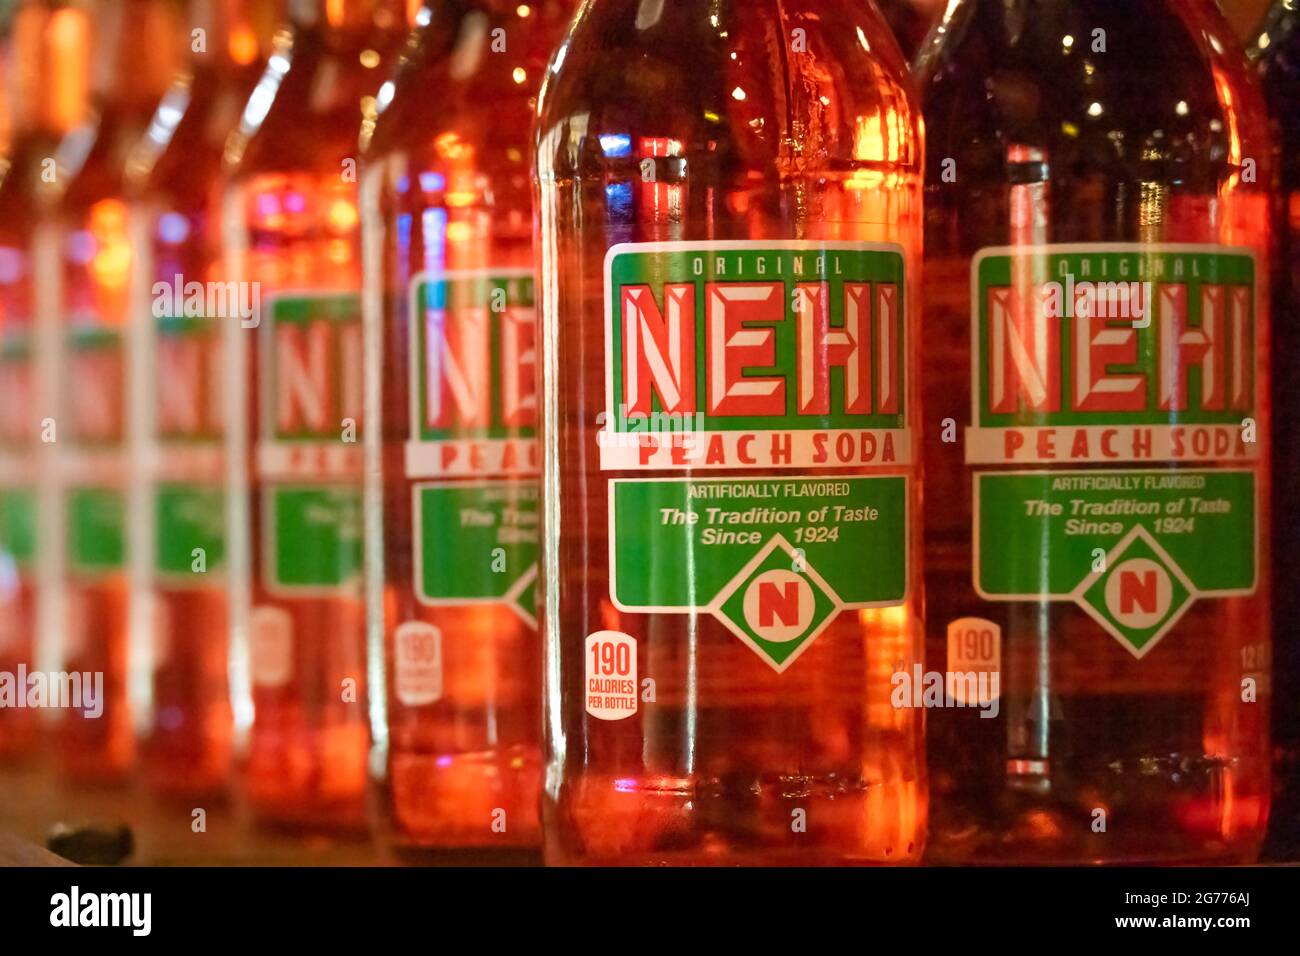 Bottiglie di soda Nehi Peach presso il negozio Betty's Country di Helen, Georgia. (STATI UNITI) Foto Stock